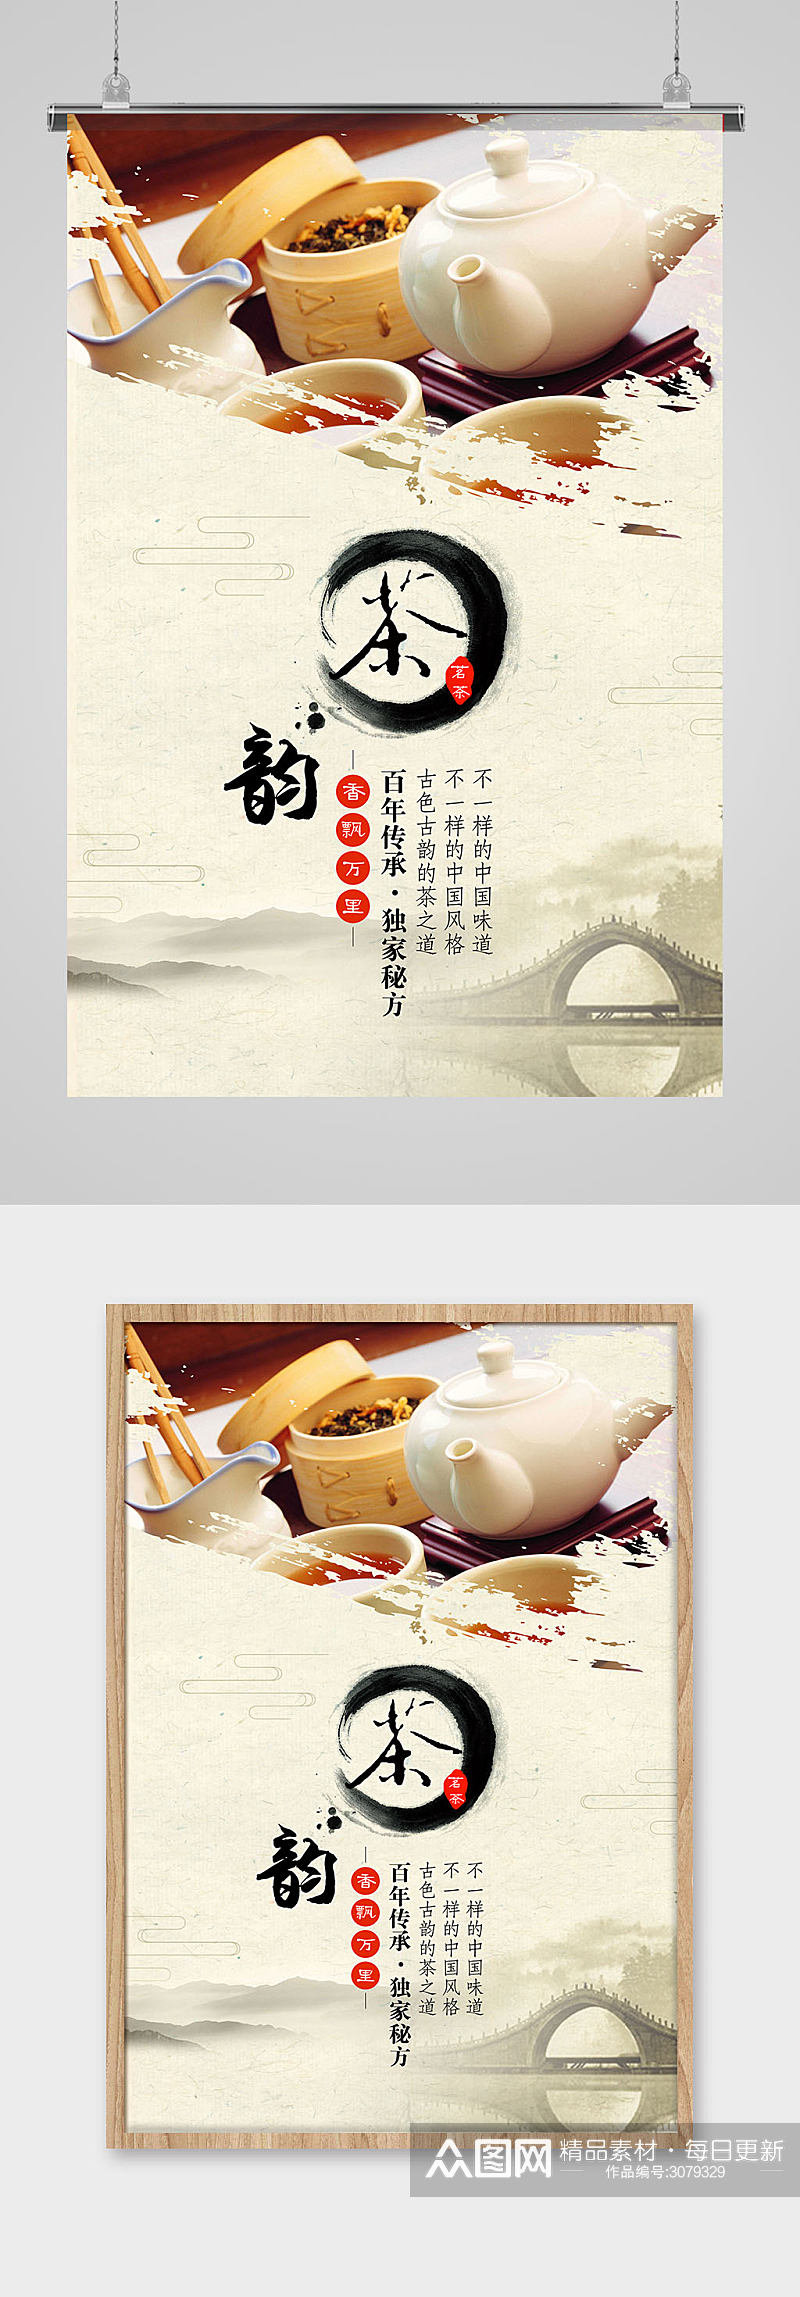 水墨中国风茶创意海报素材